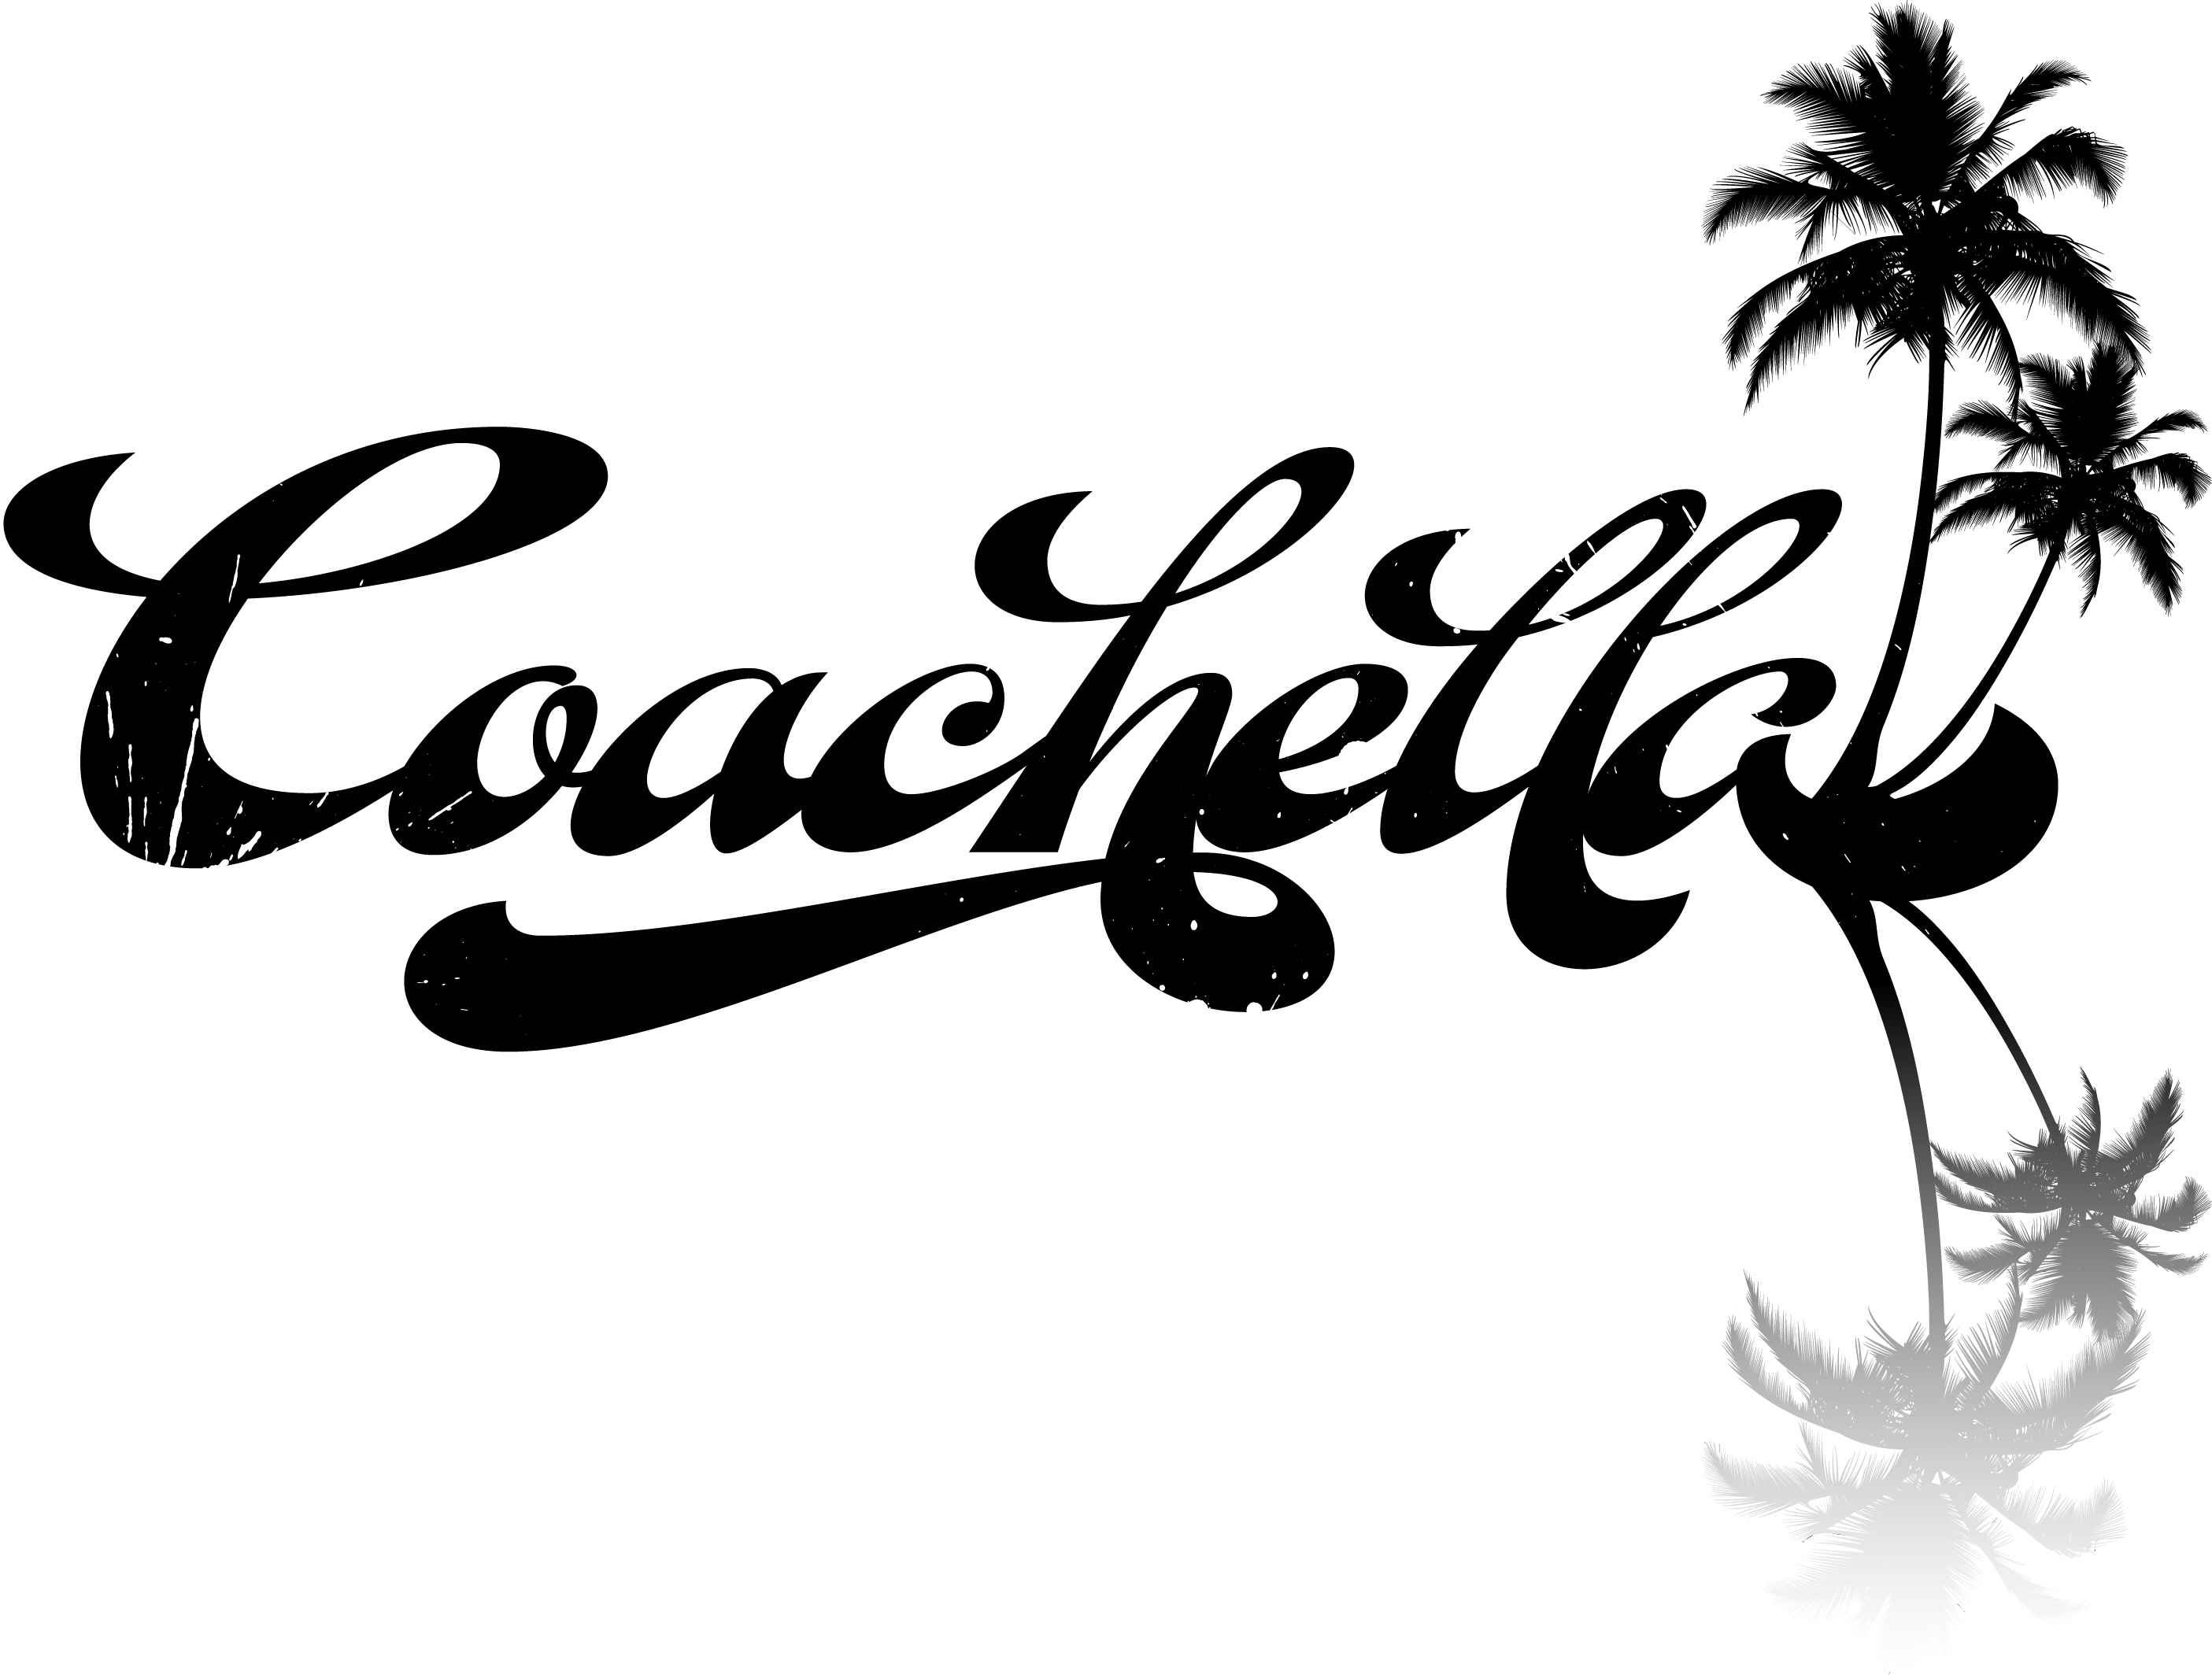 Coachella Logo Vector at Collection of Coachella Logo